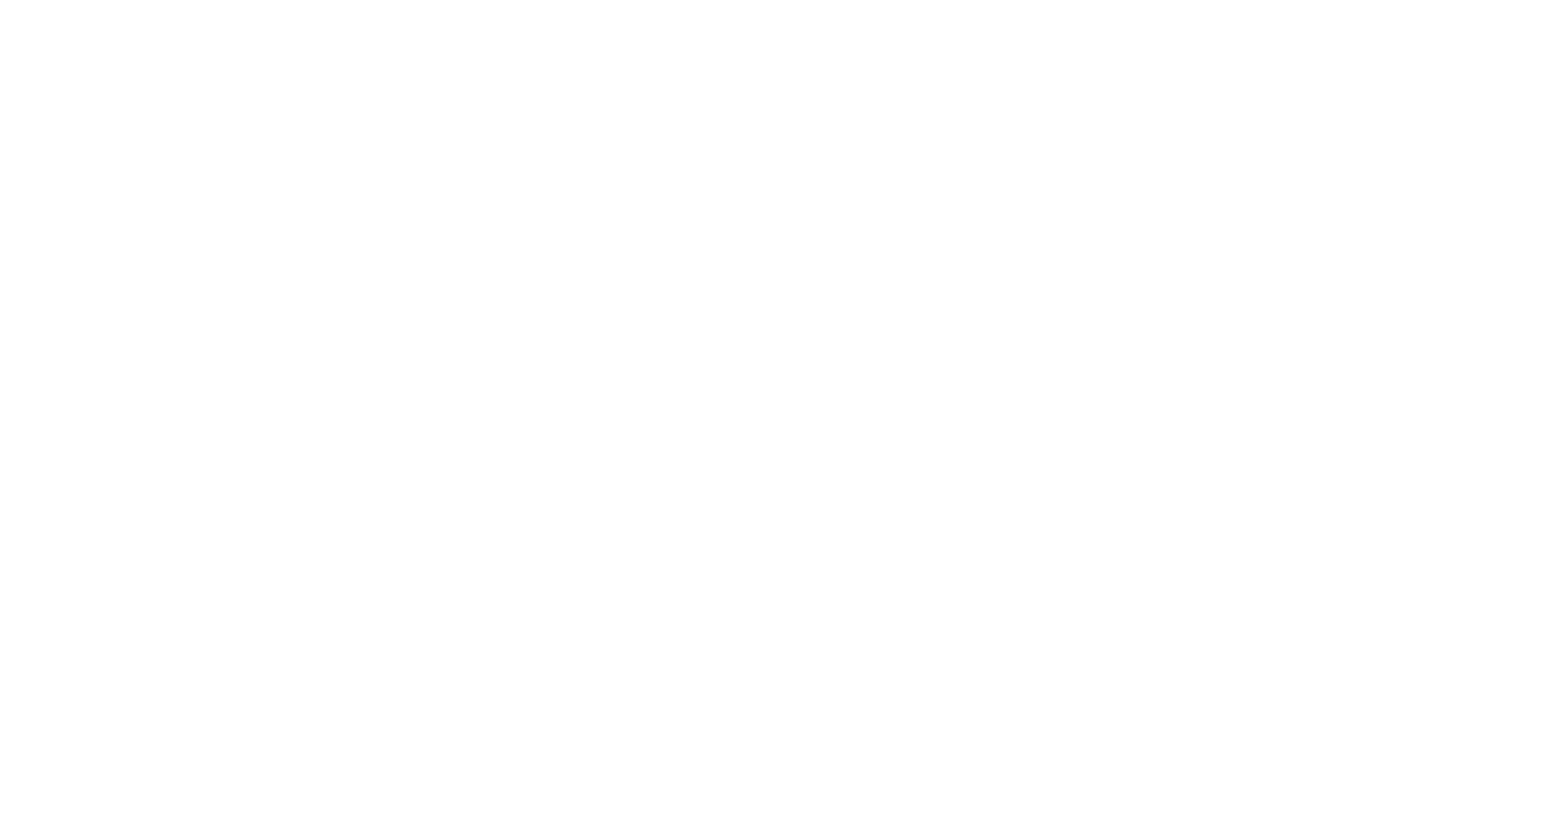 Golfmotion.com Logo